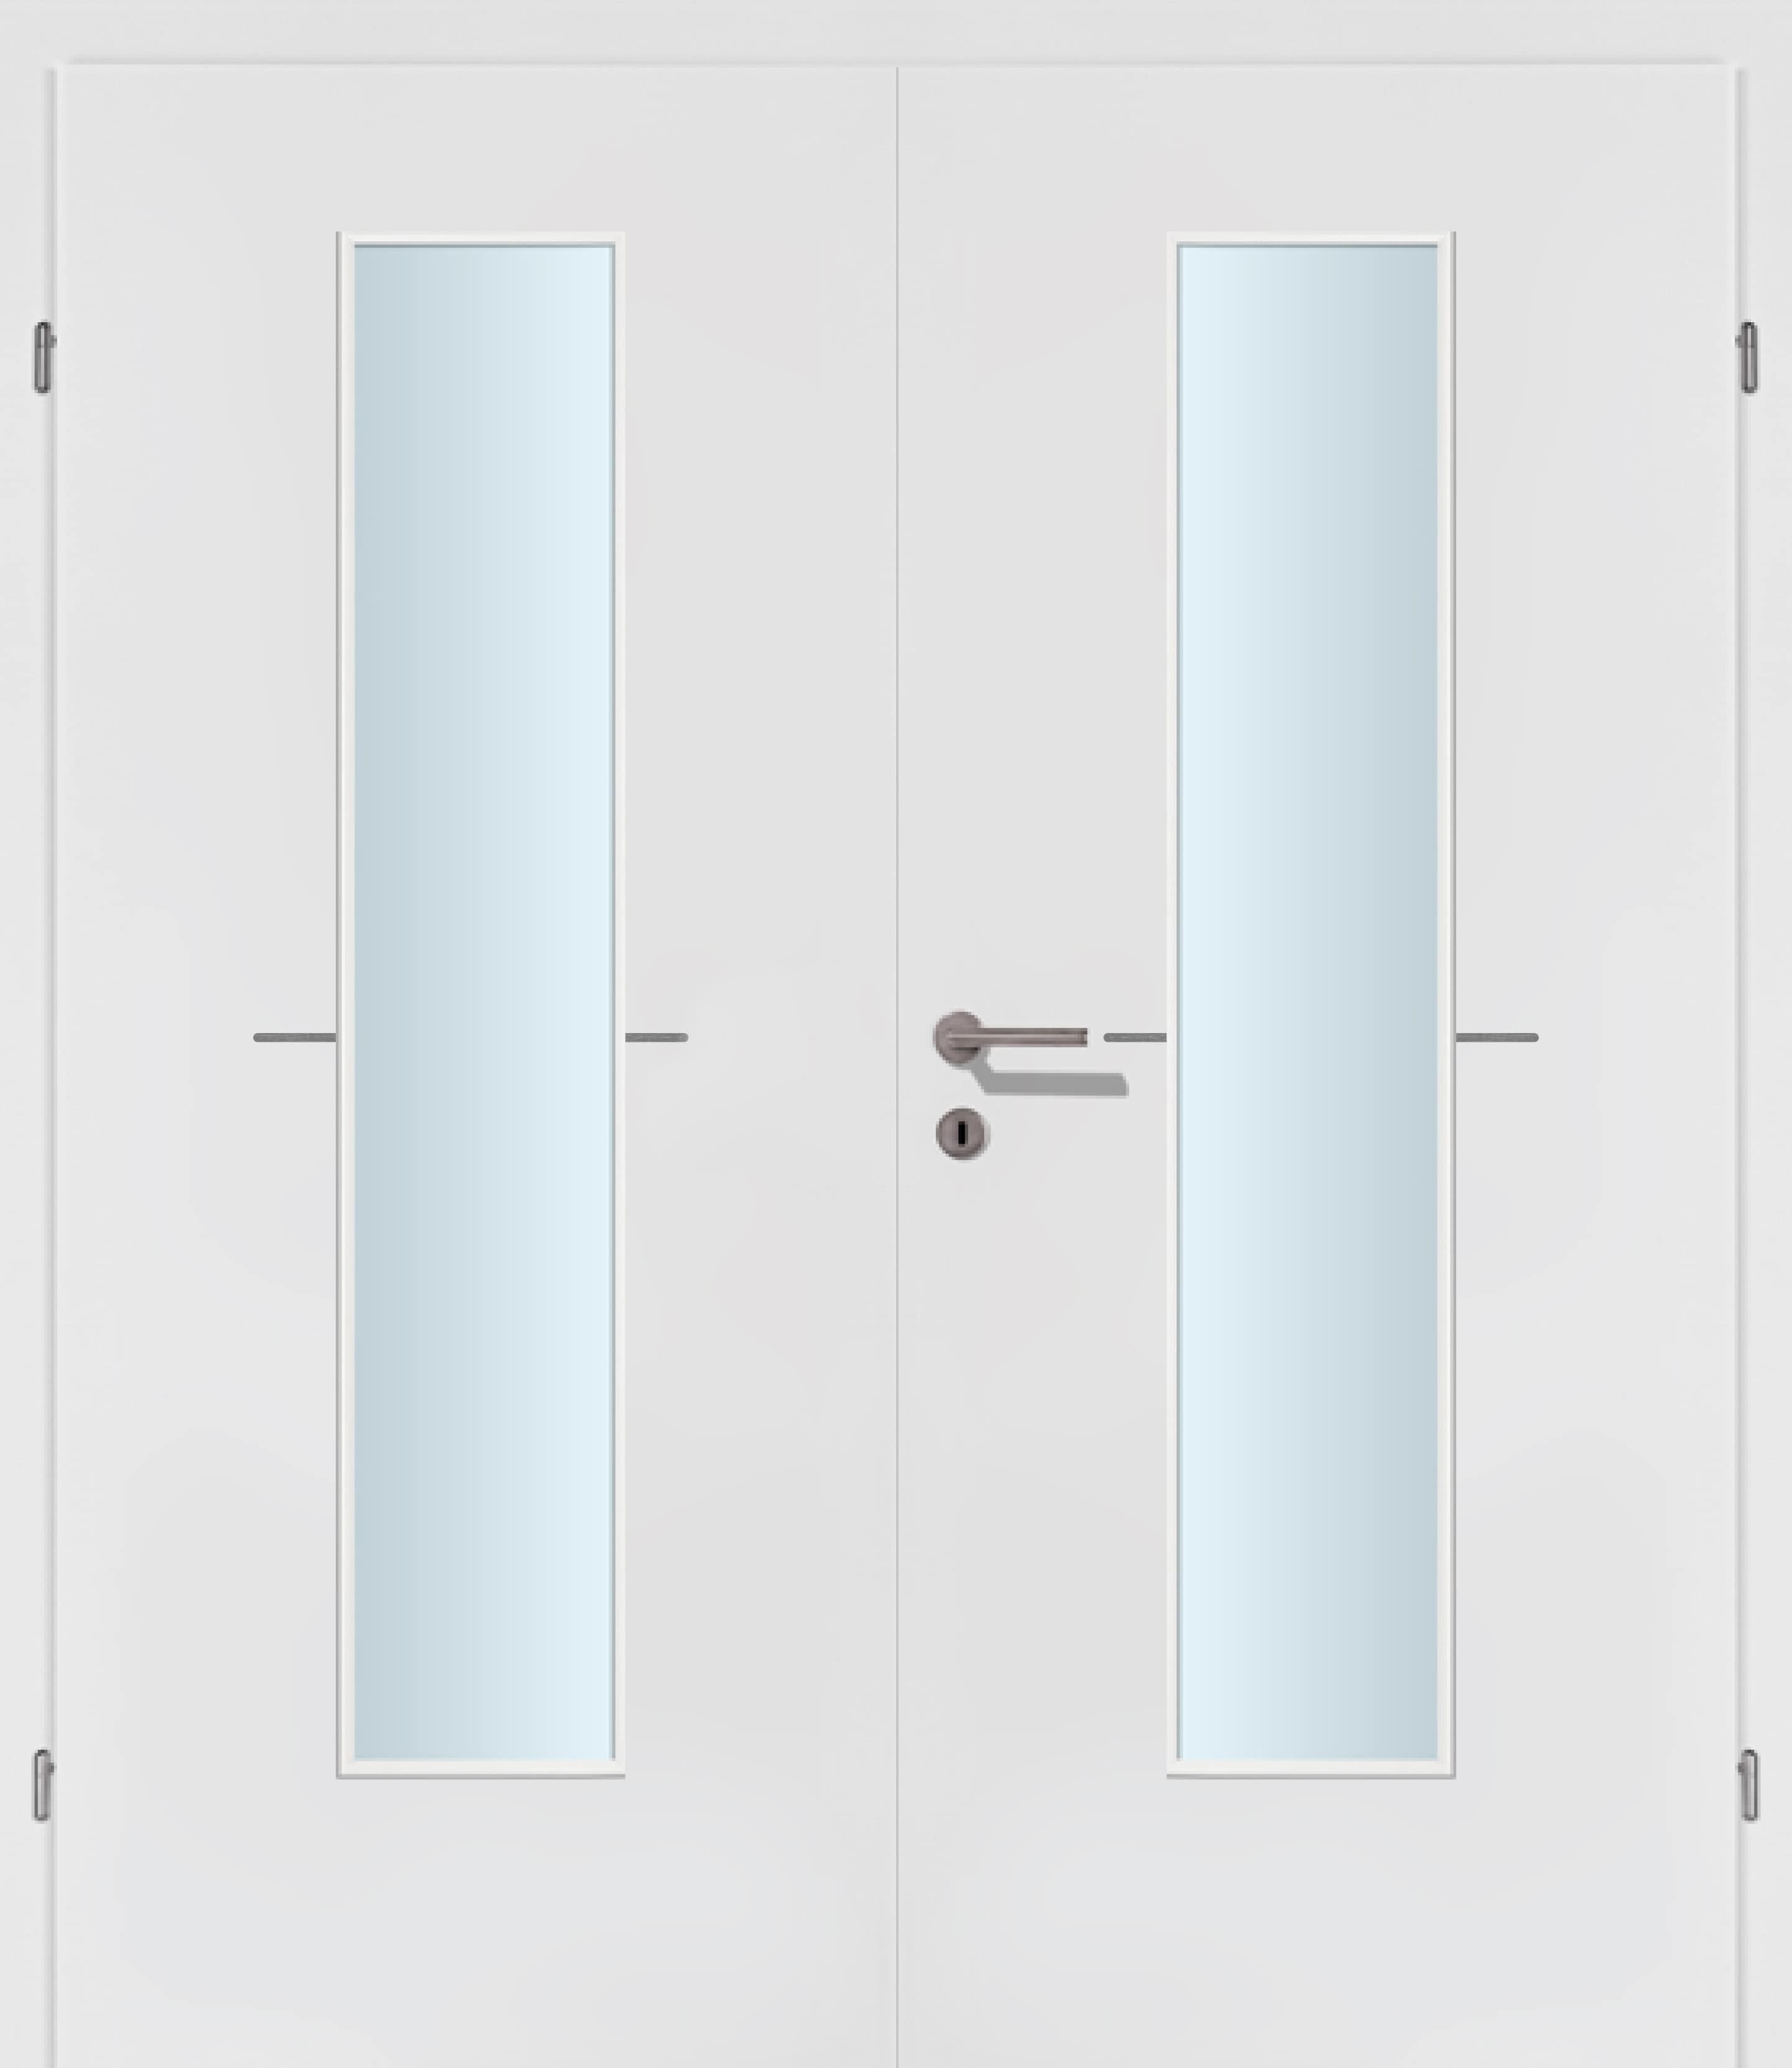 Selektion T47 Alu Effekt Lisenen weiss Innentür Inkl. Zarge (Türrahmen) Doppeltüre Inkl. Glaslichte EN Mittig